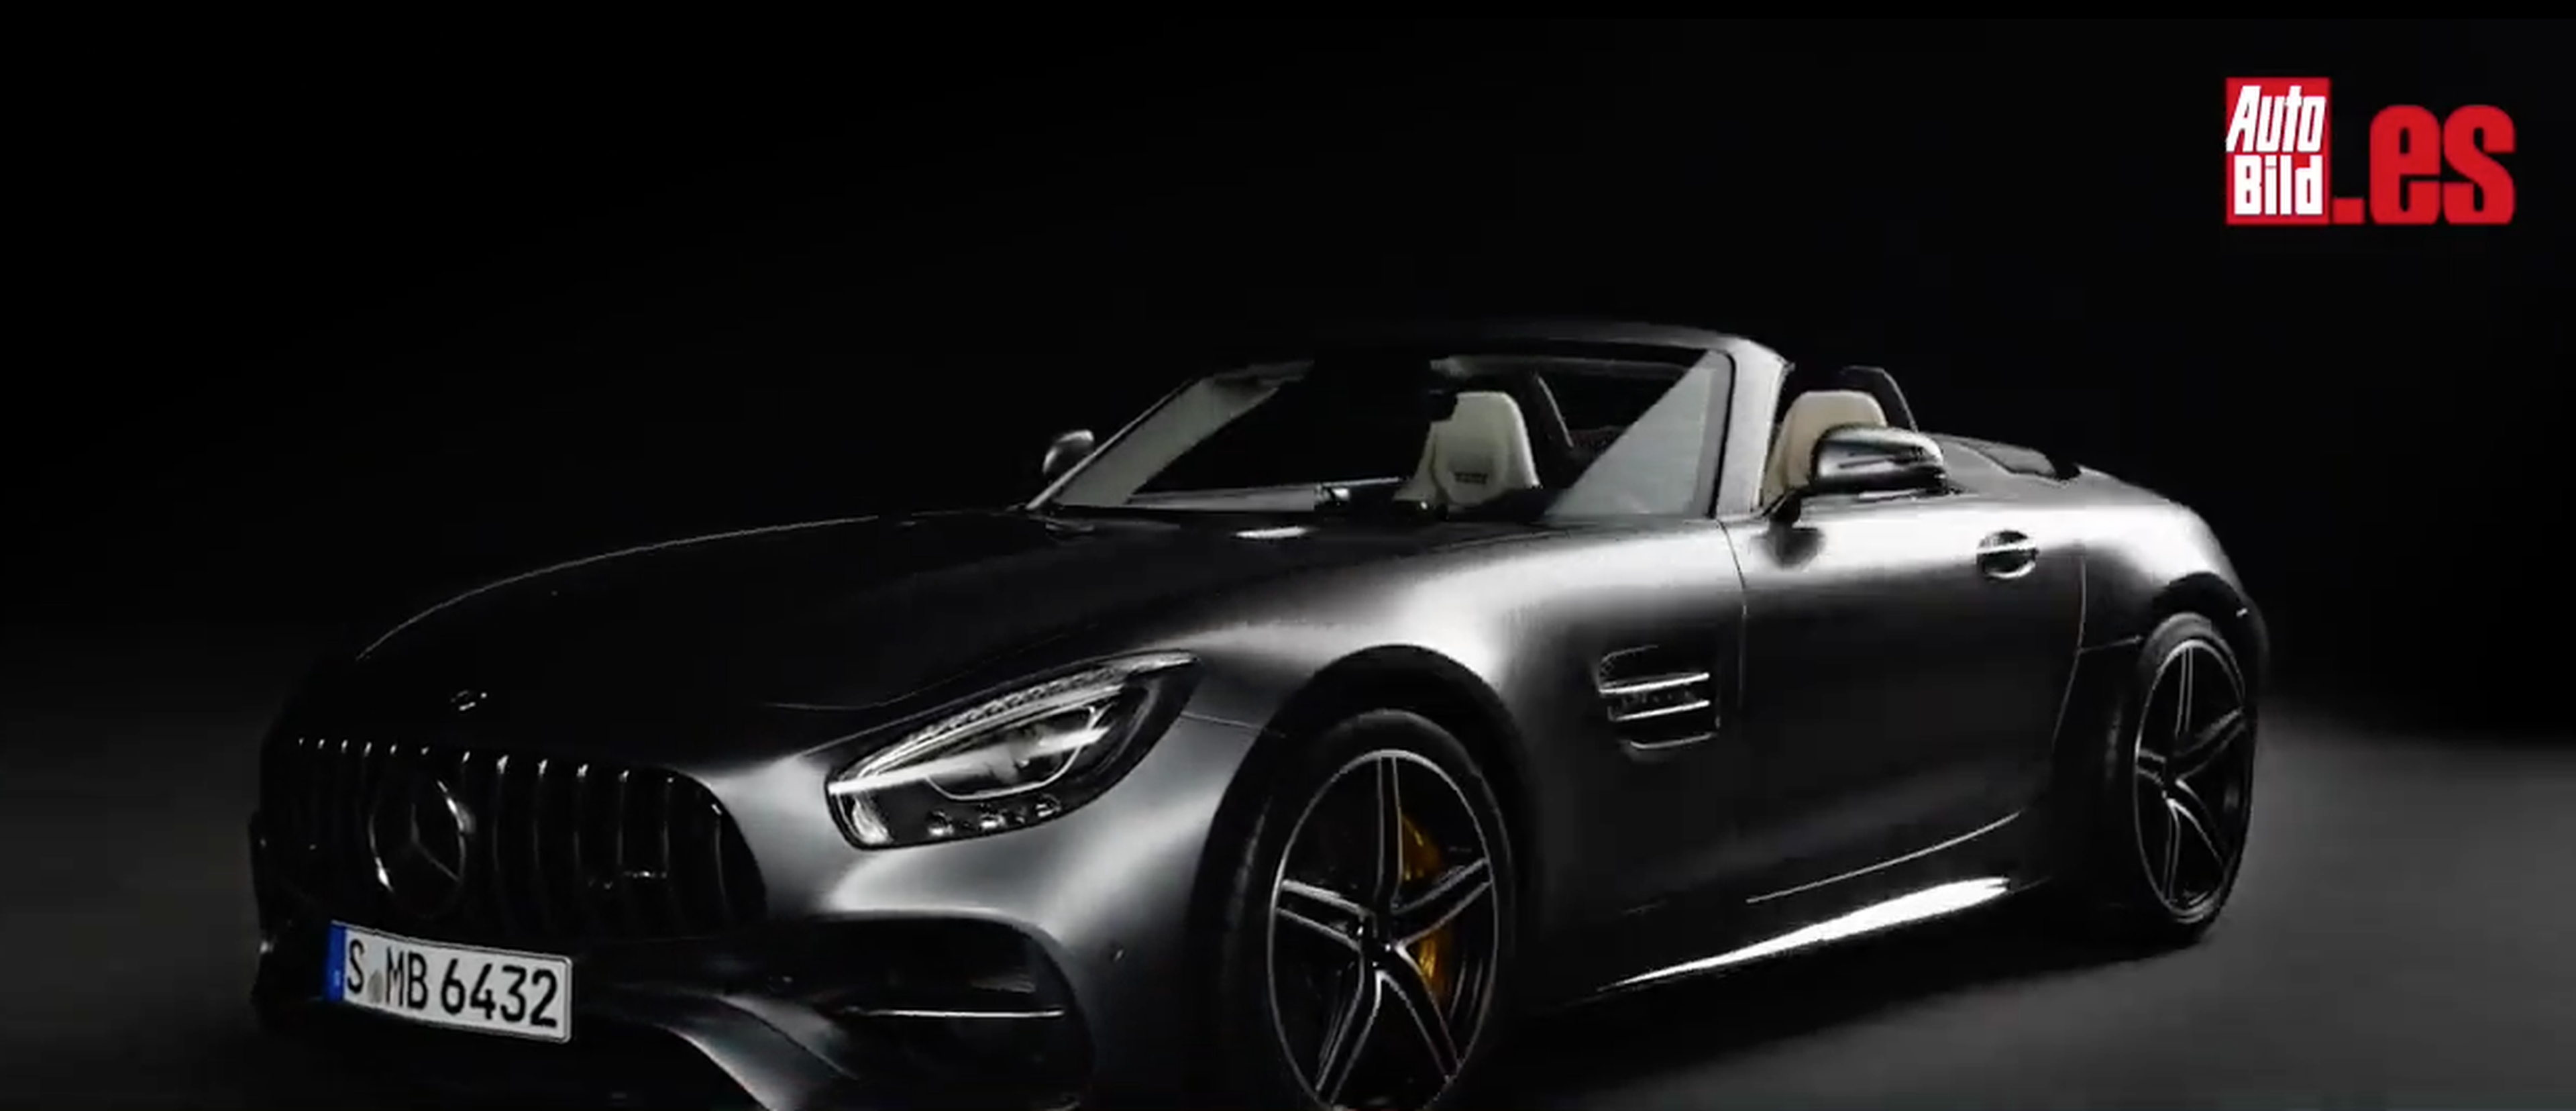 VÍDEO: Primeras imágenes del Mercedes-AMG GT C Roadster en acción